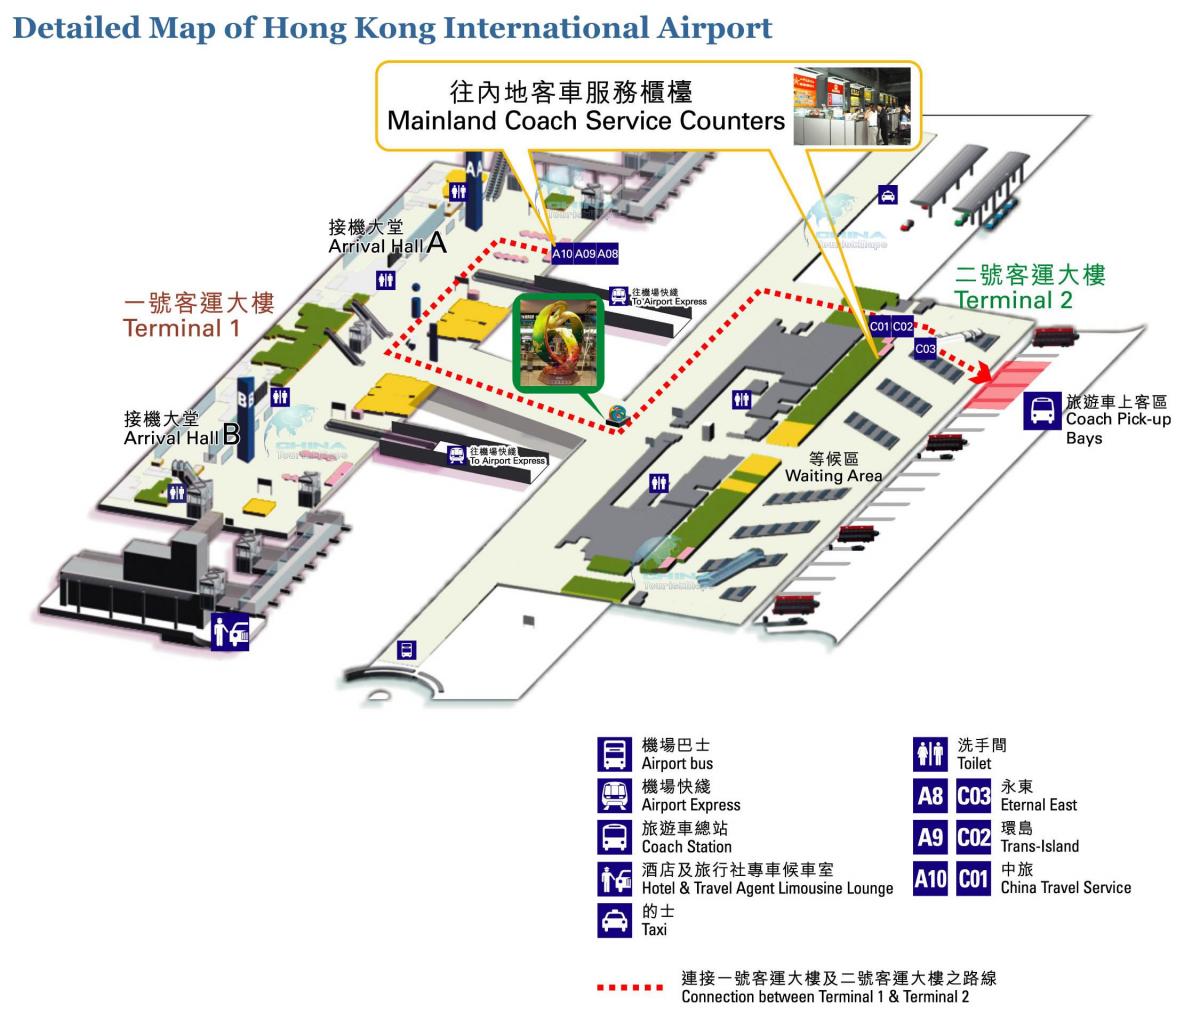 kort over Hong Kong lufthavn